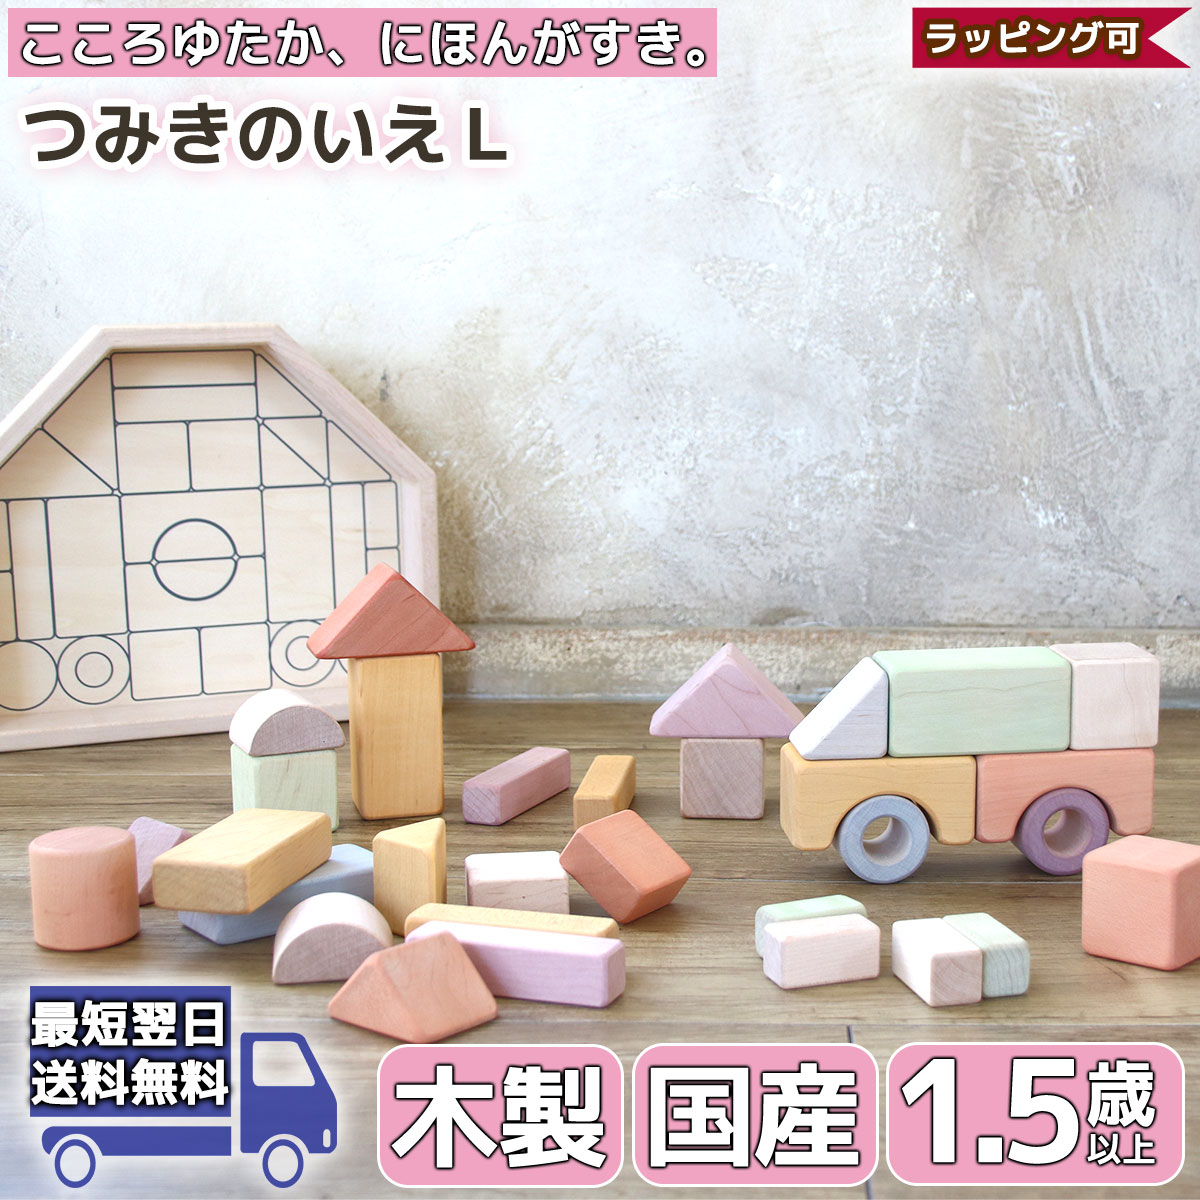 7月30日最大10 Offクーポン つみきのいえl Nihon エド インター おもちゃ モンテッソーリ もんてっそーり ブロック 1歳半 一歳半 室内 男の子 女の子 玩具 1 5歳 出産祝い 夏休み Mundoexplora Com